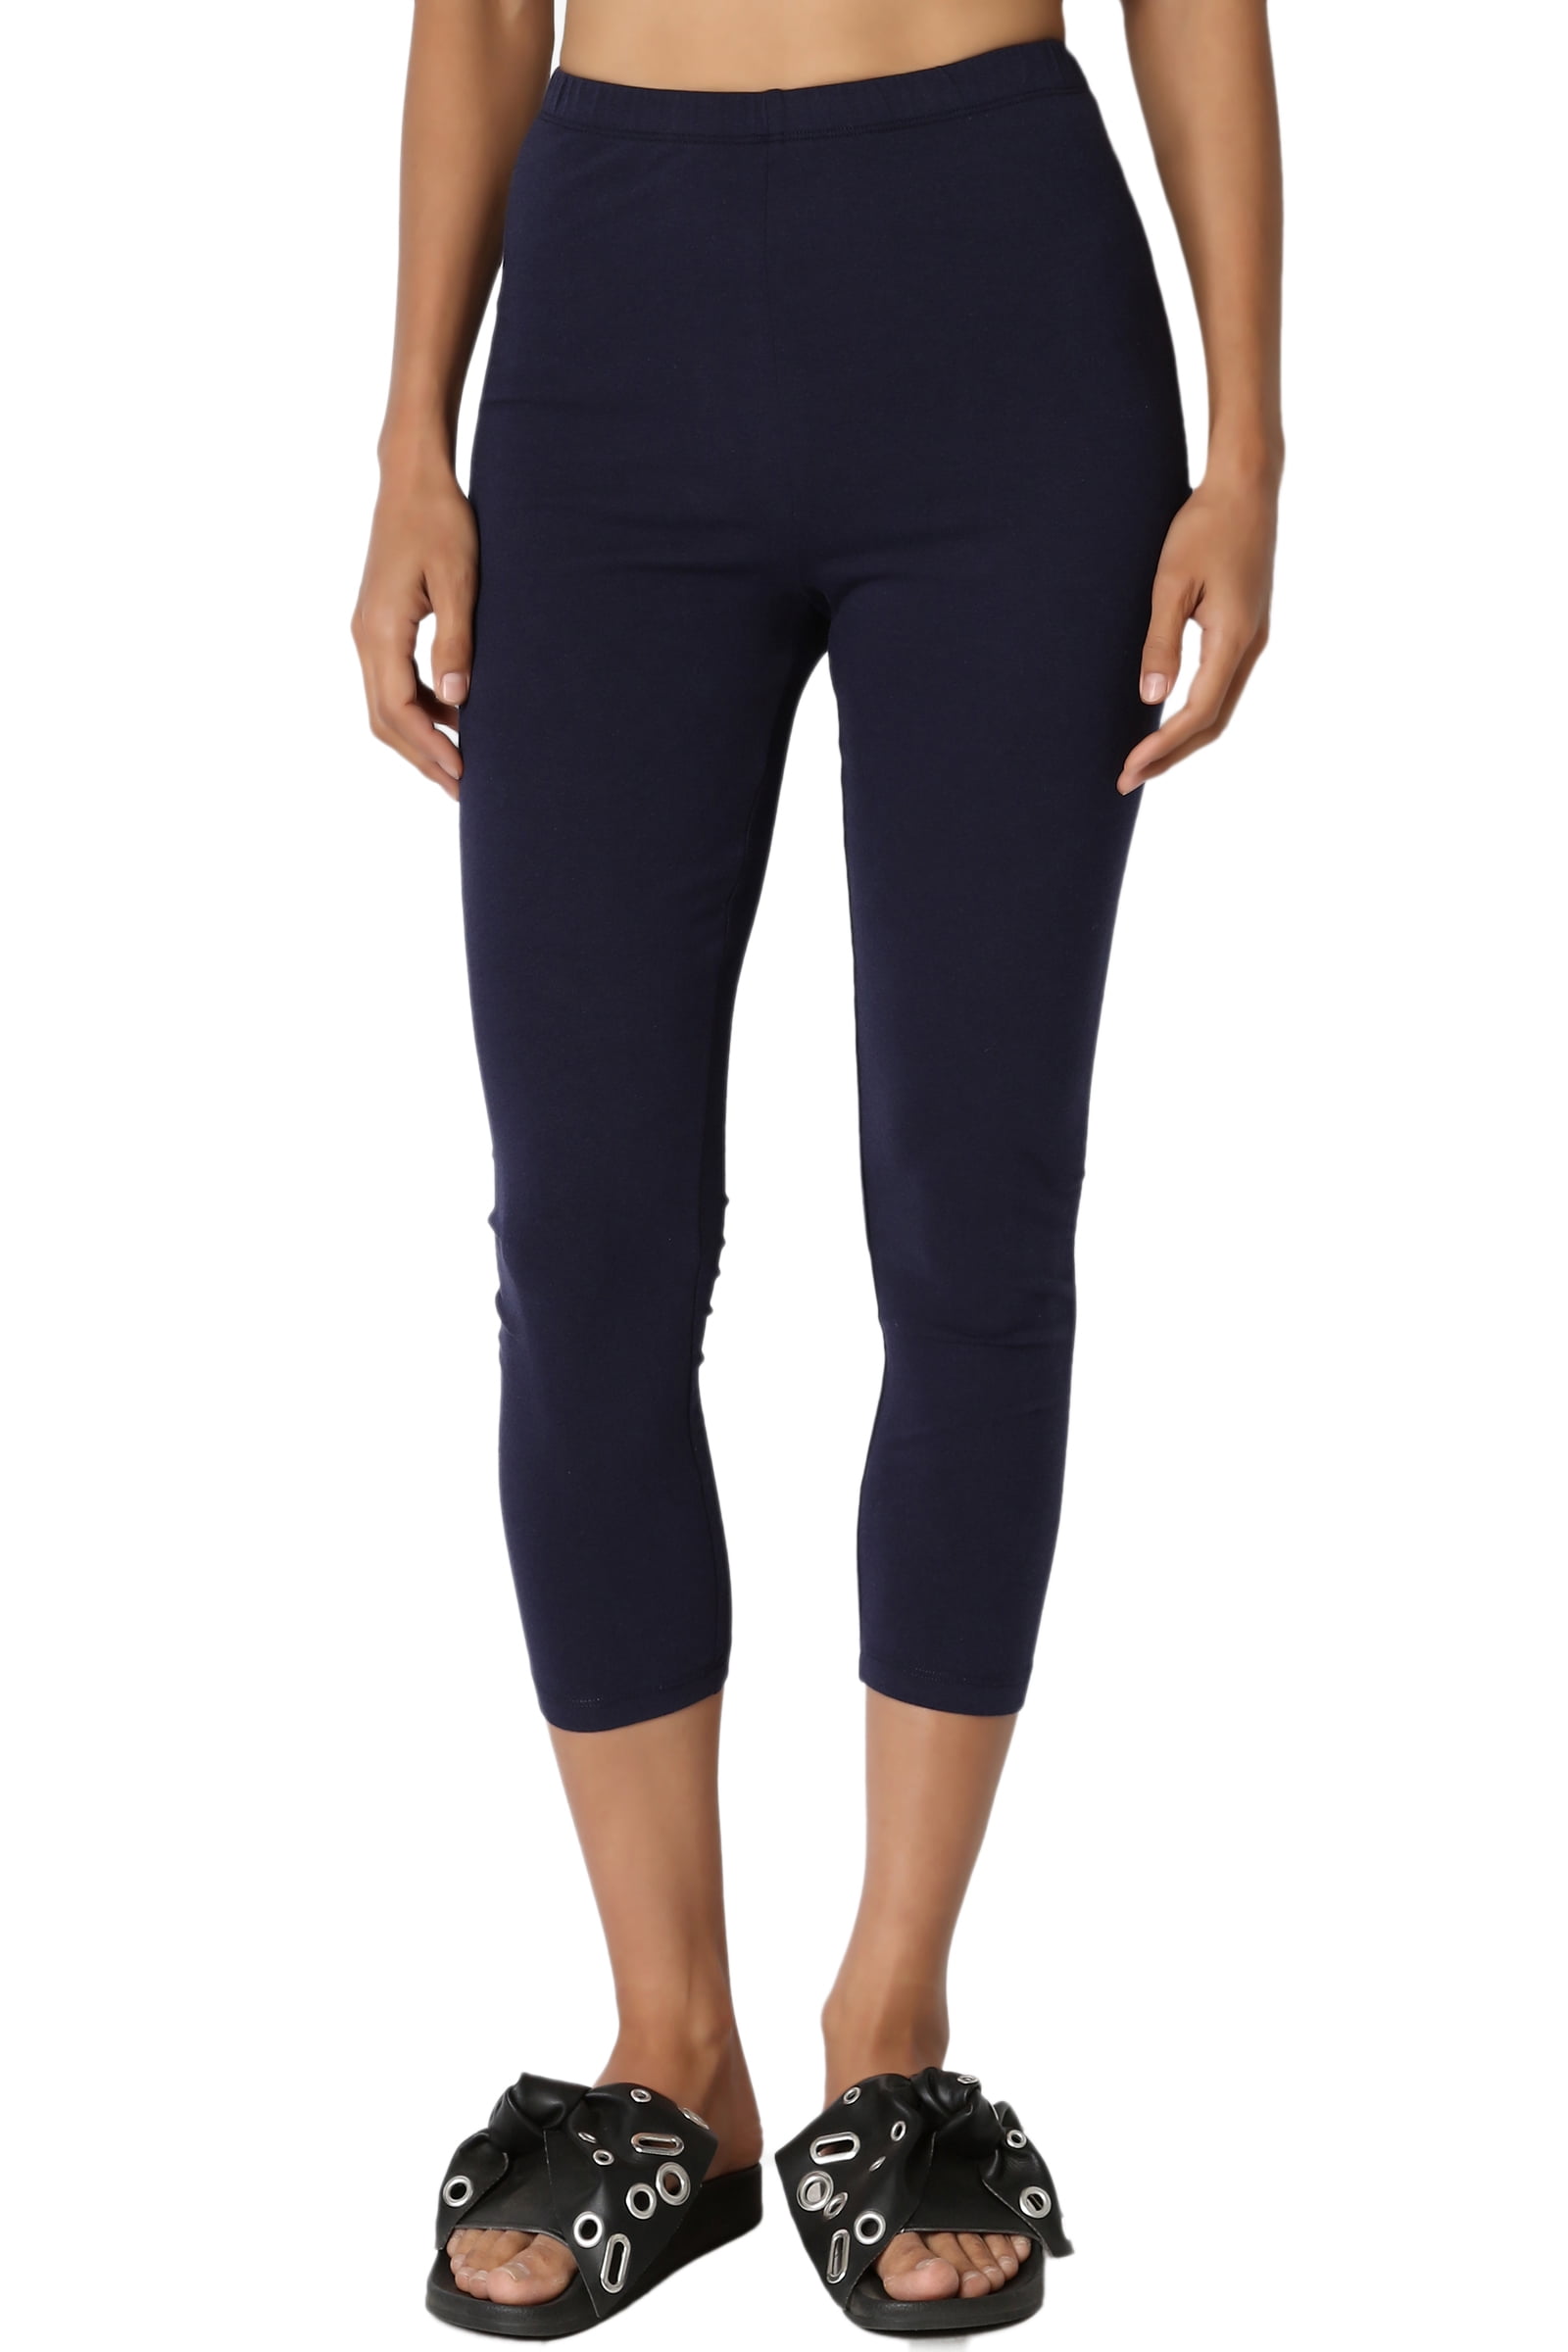 Women's Cotton Capri Leggings - Xhilaration™ Black S : Target